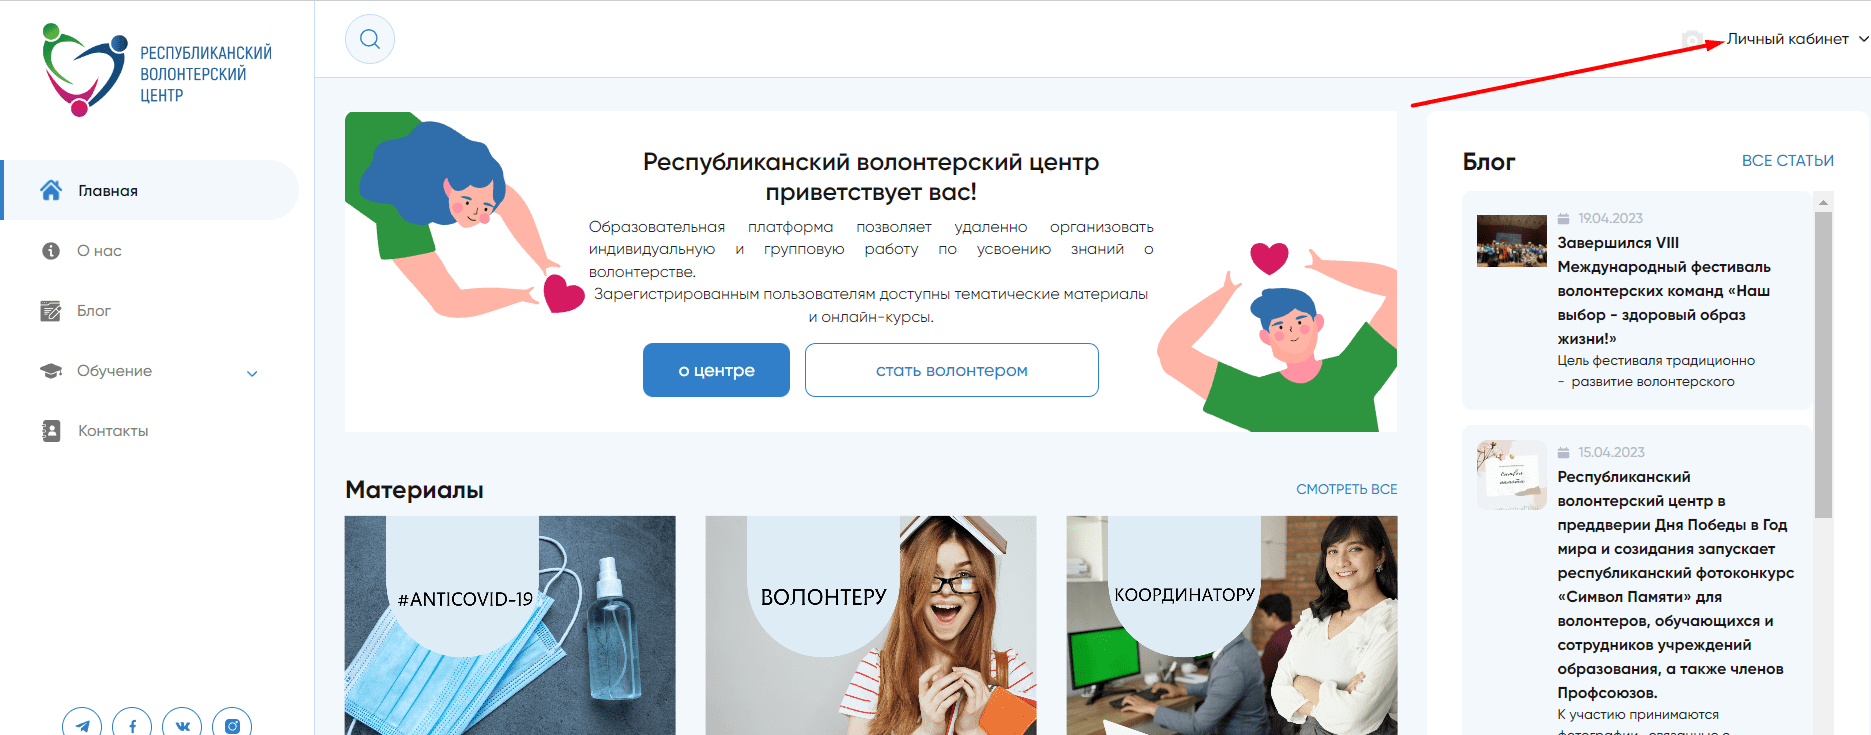 Республиканский волонтерский центр в Республике Беларусь (rvc.by) - официальный сайт, как стать волонтером